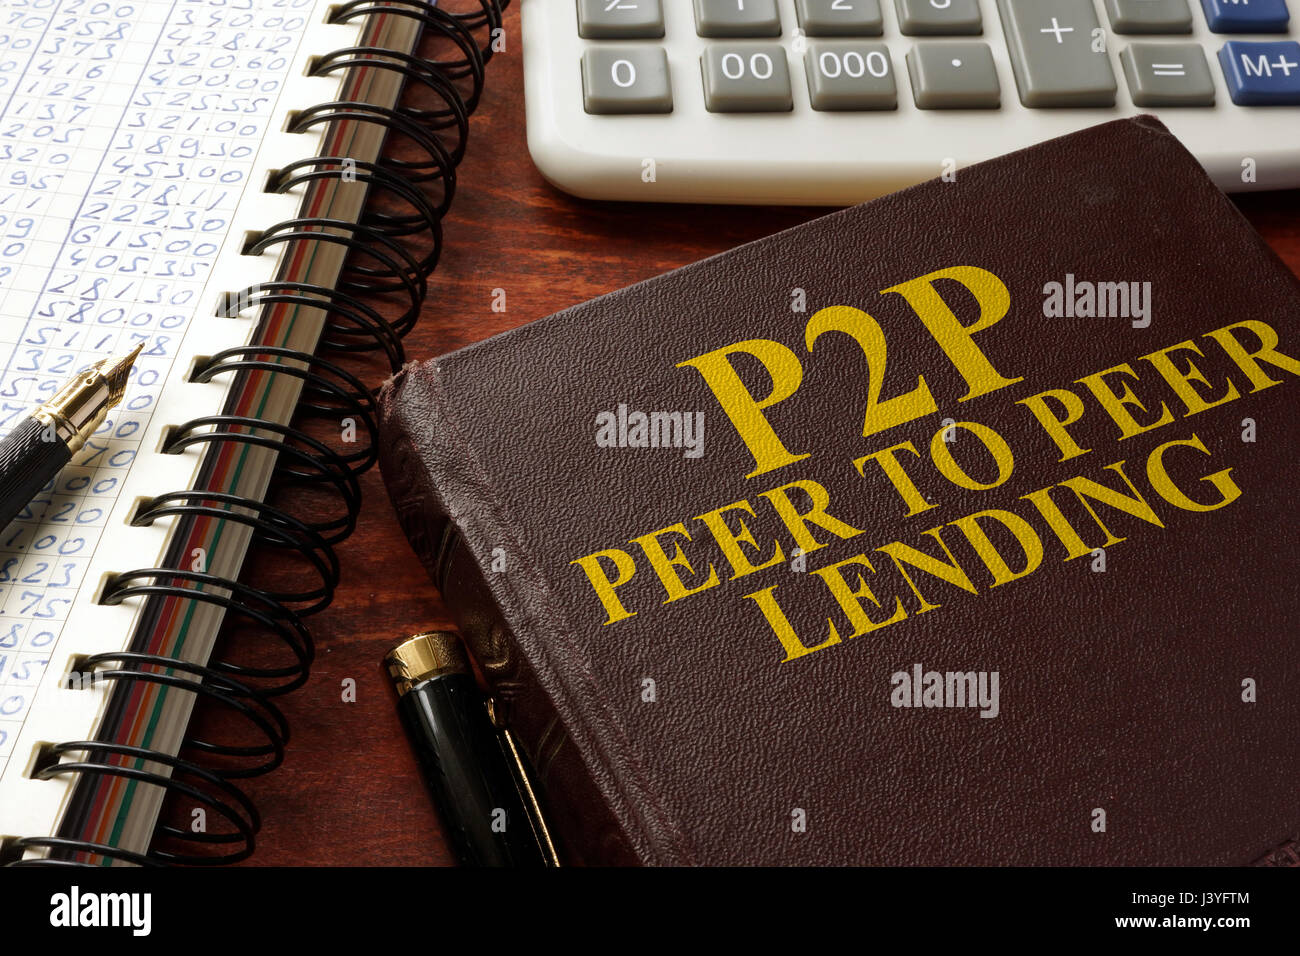 Livre avec titre P2P peer to peer prêts sur une table. Banque D'Images